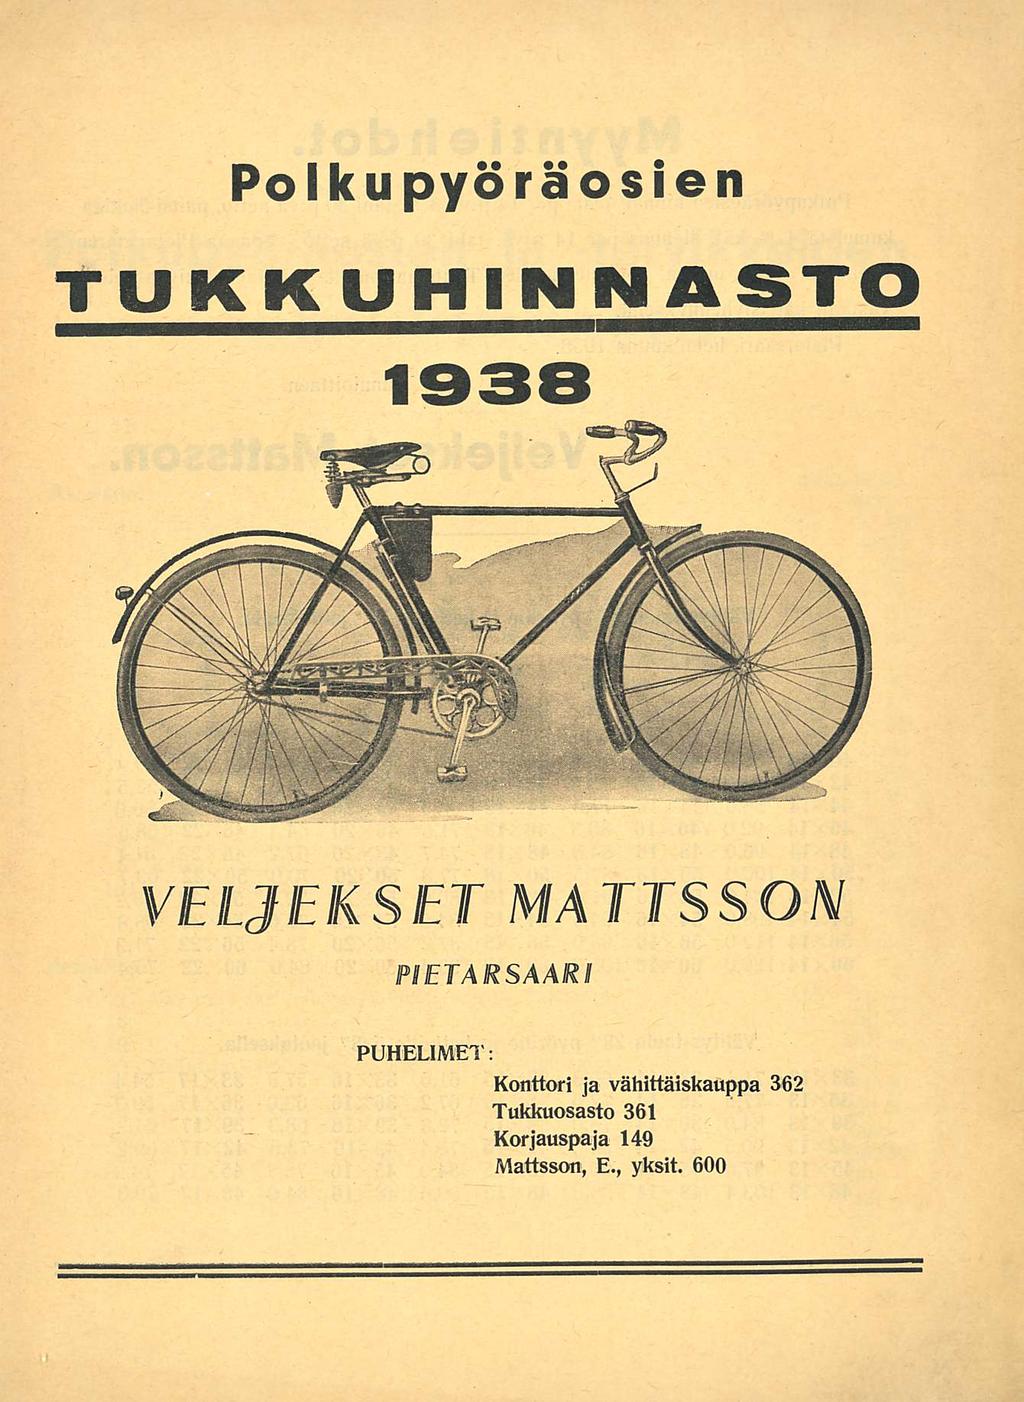 Polkupyöräosien TUKKUHINNASTO 1938 VELJEKSET MATTSSON PIETARSAARI PUHELIMET: